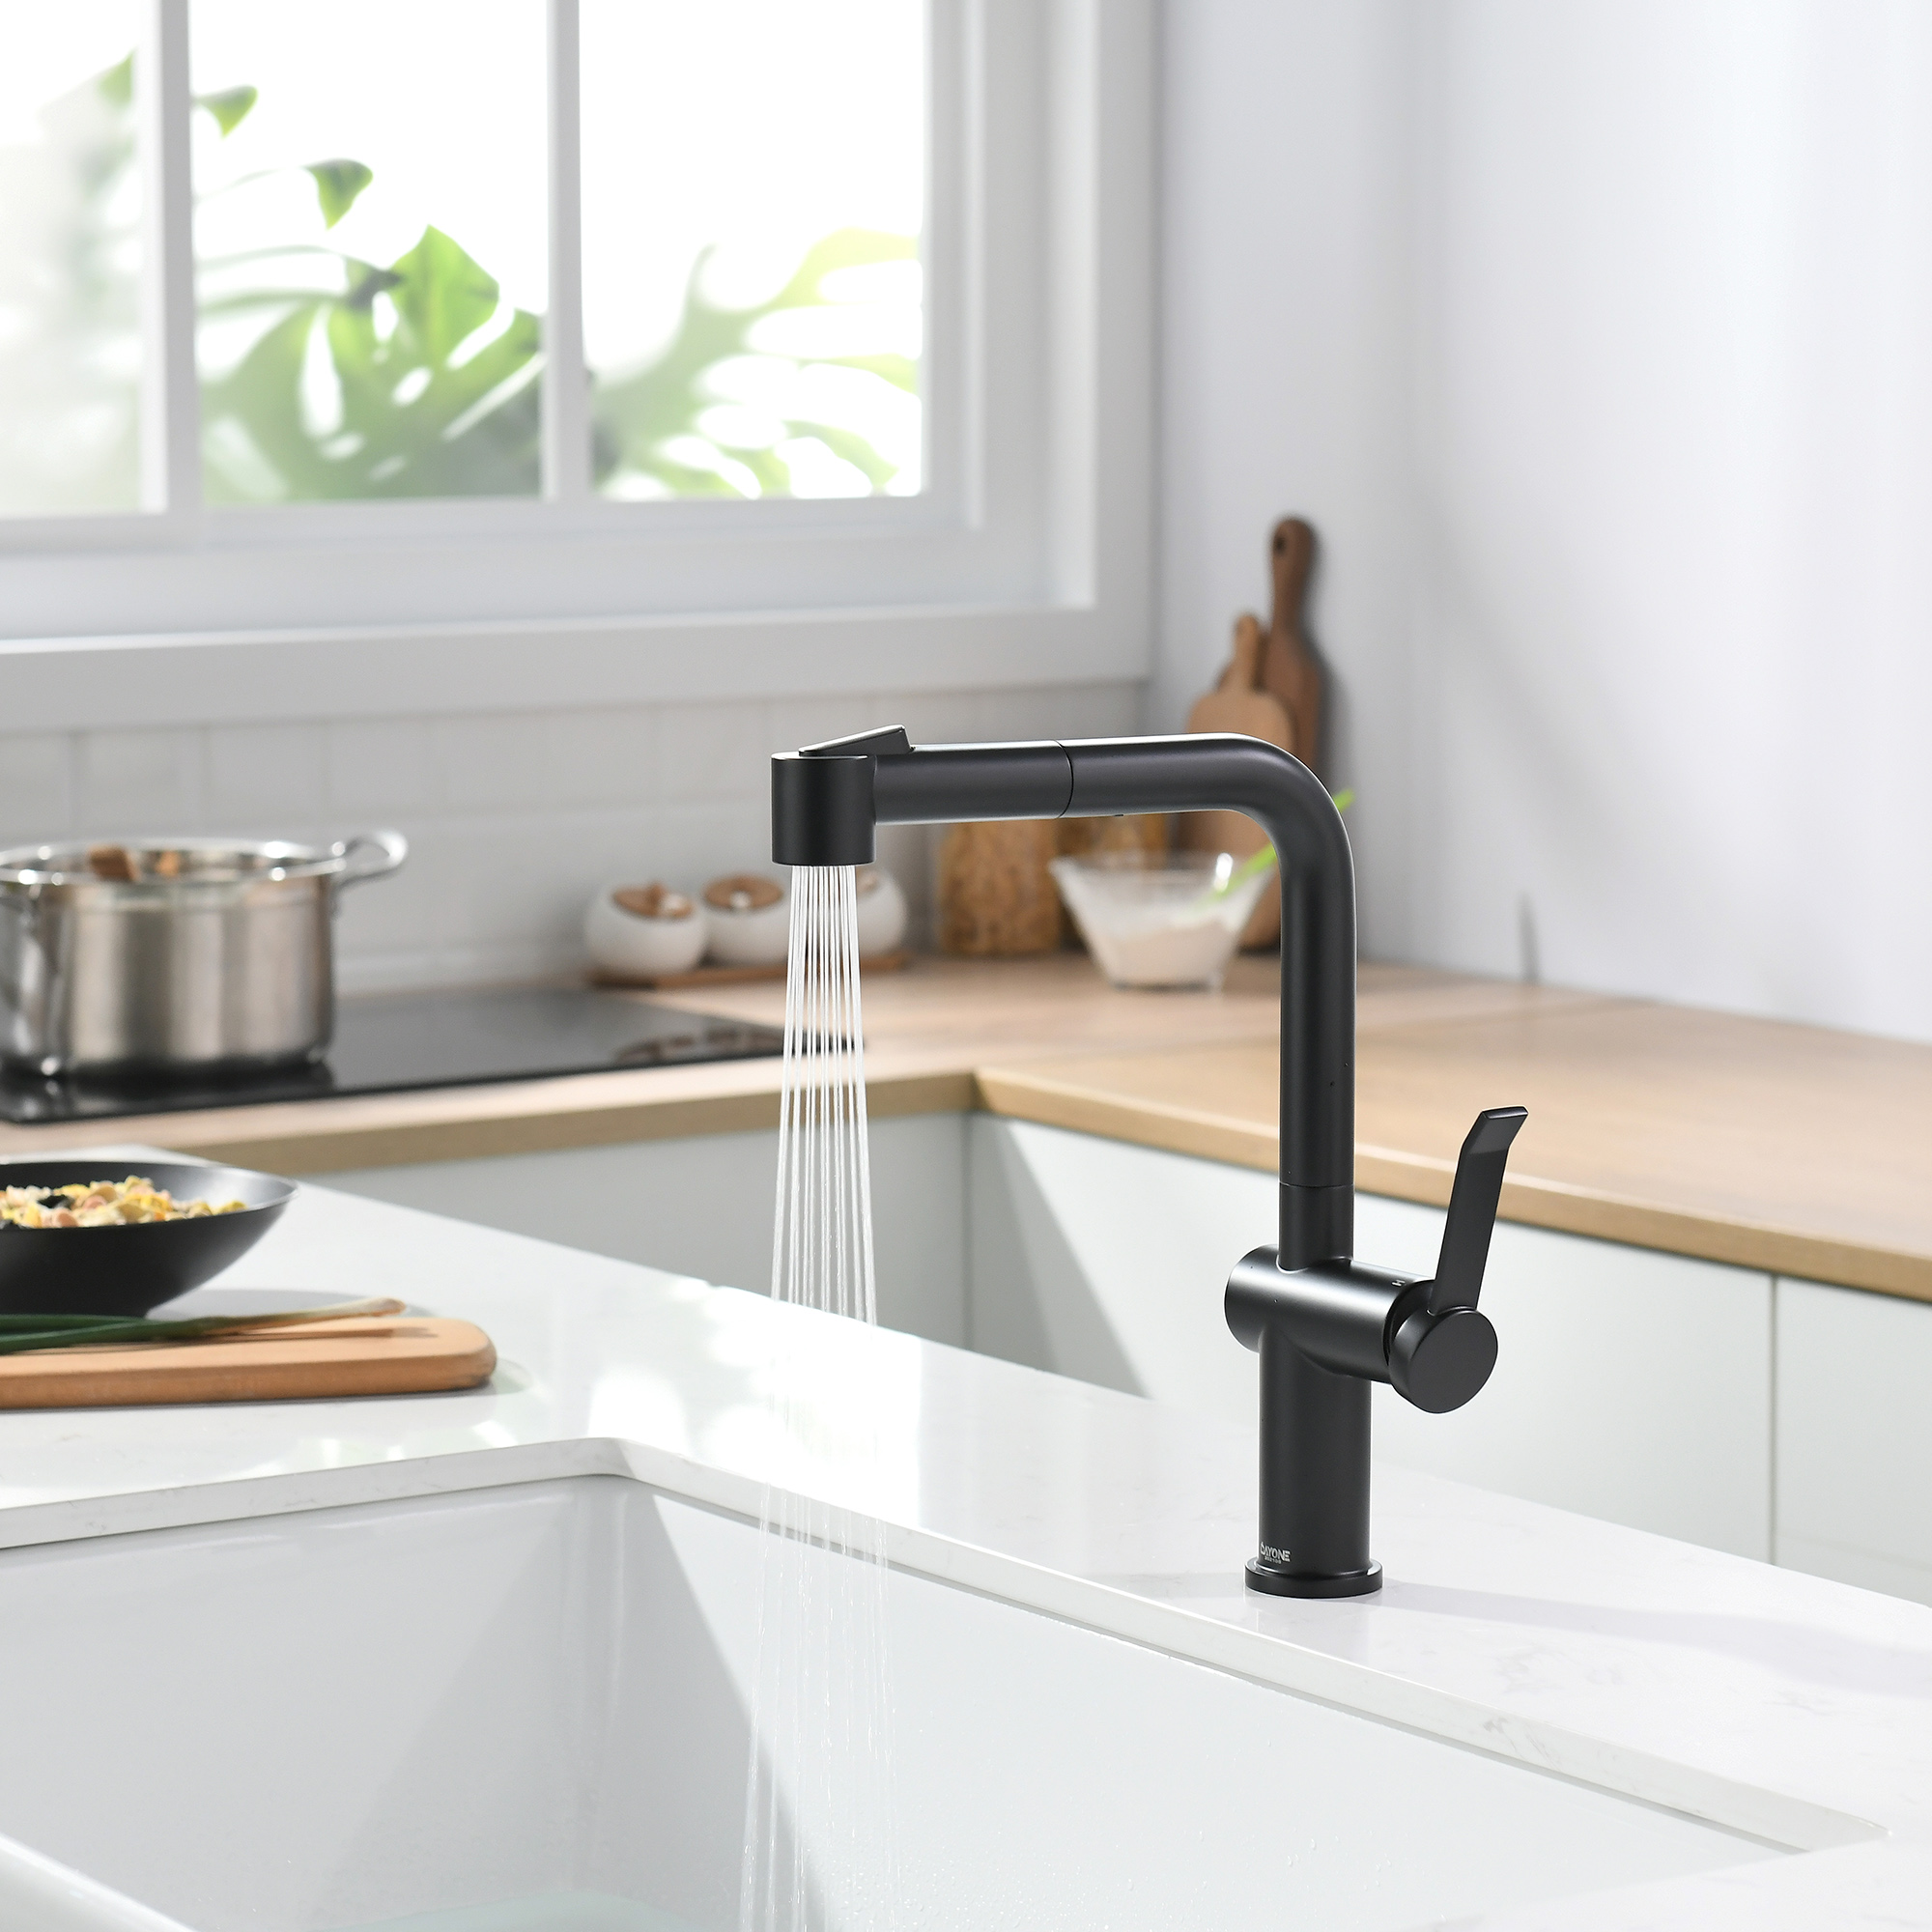 Schwarze, rostfreie, neue Design-Einloch-Küchenarmaturen zum Herausziehen